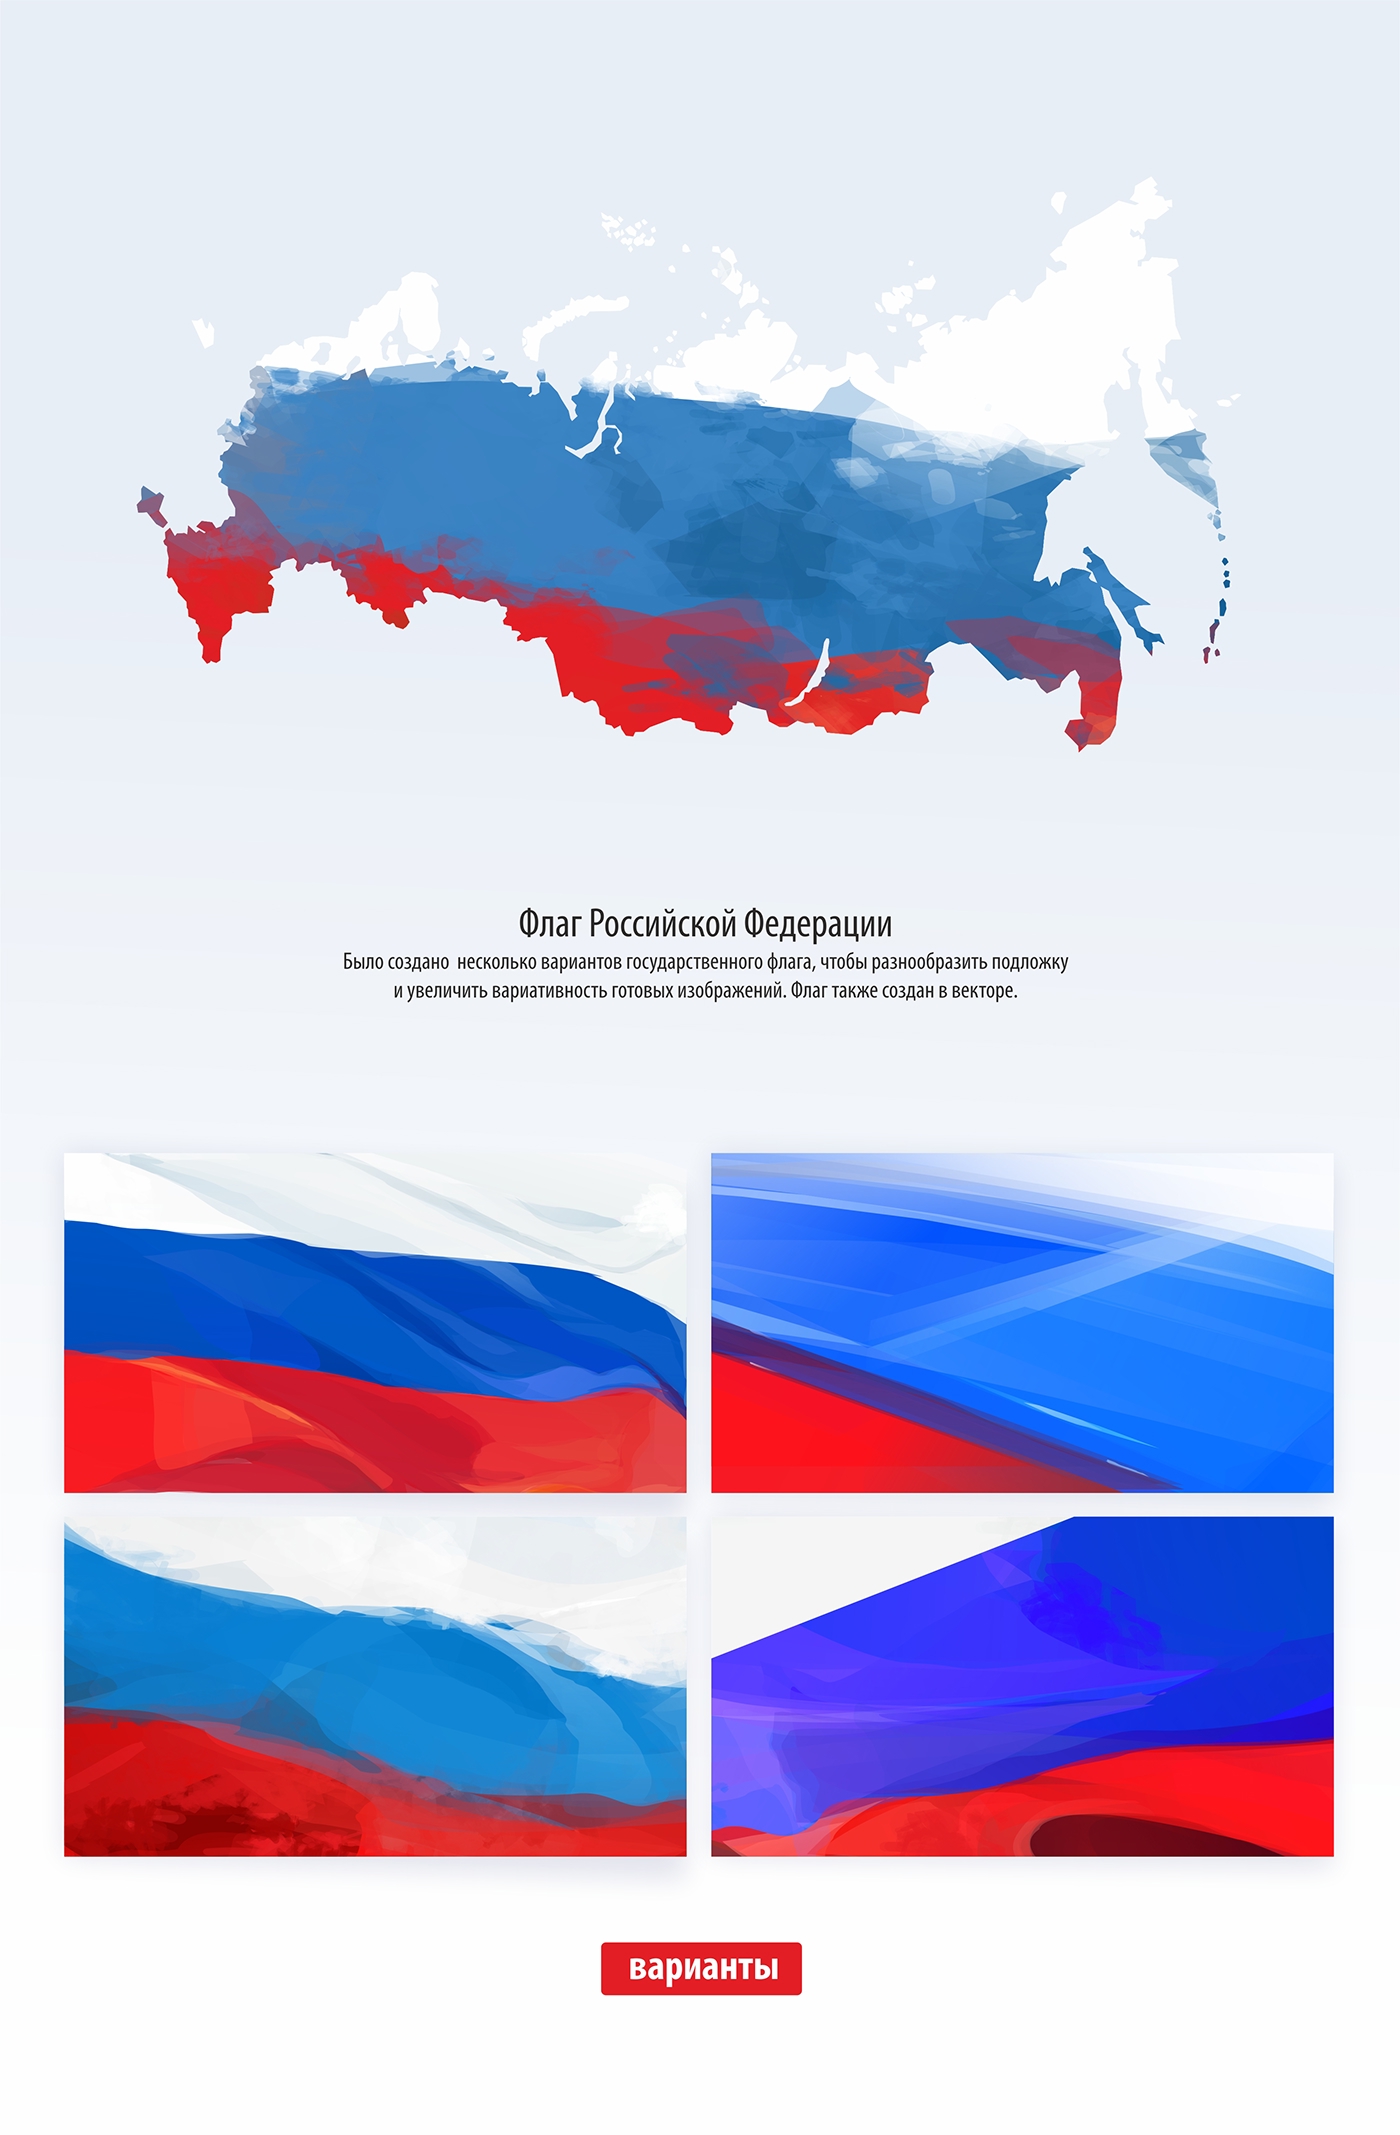 Elections politics выборы 2016 Дума Единая Россия putin Путин вектор